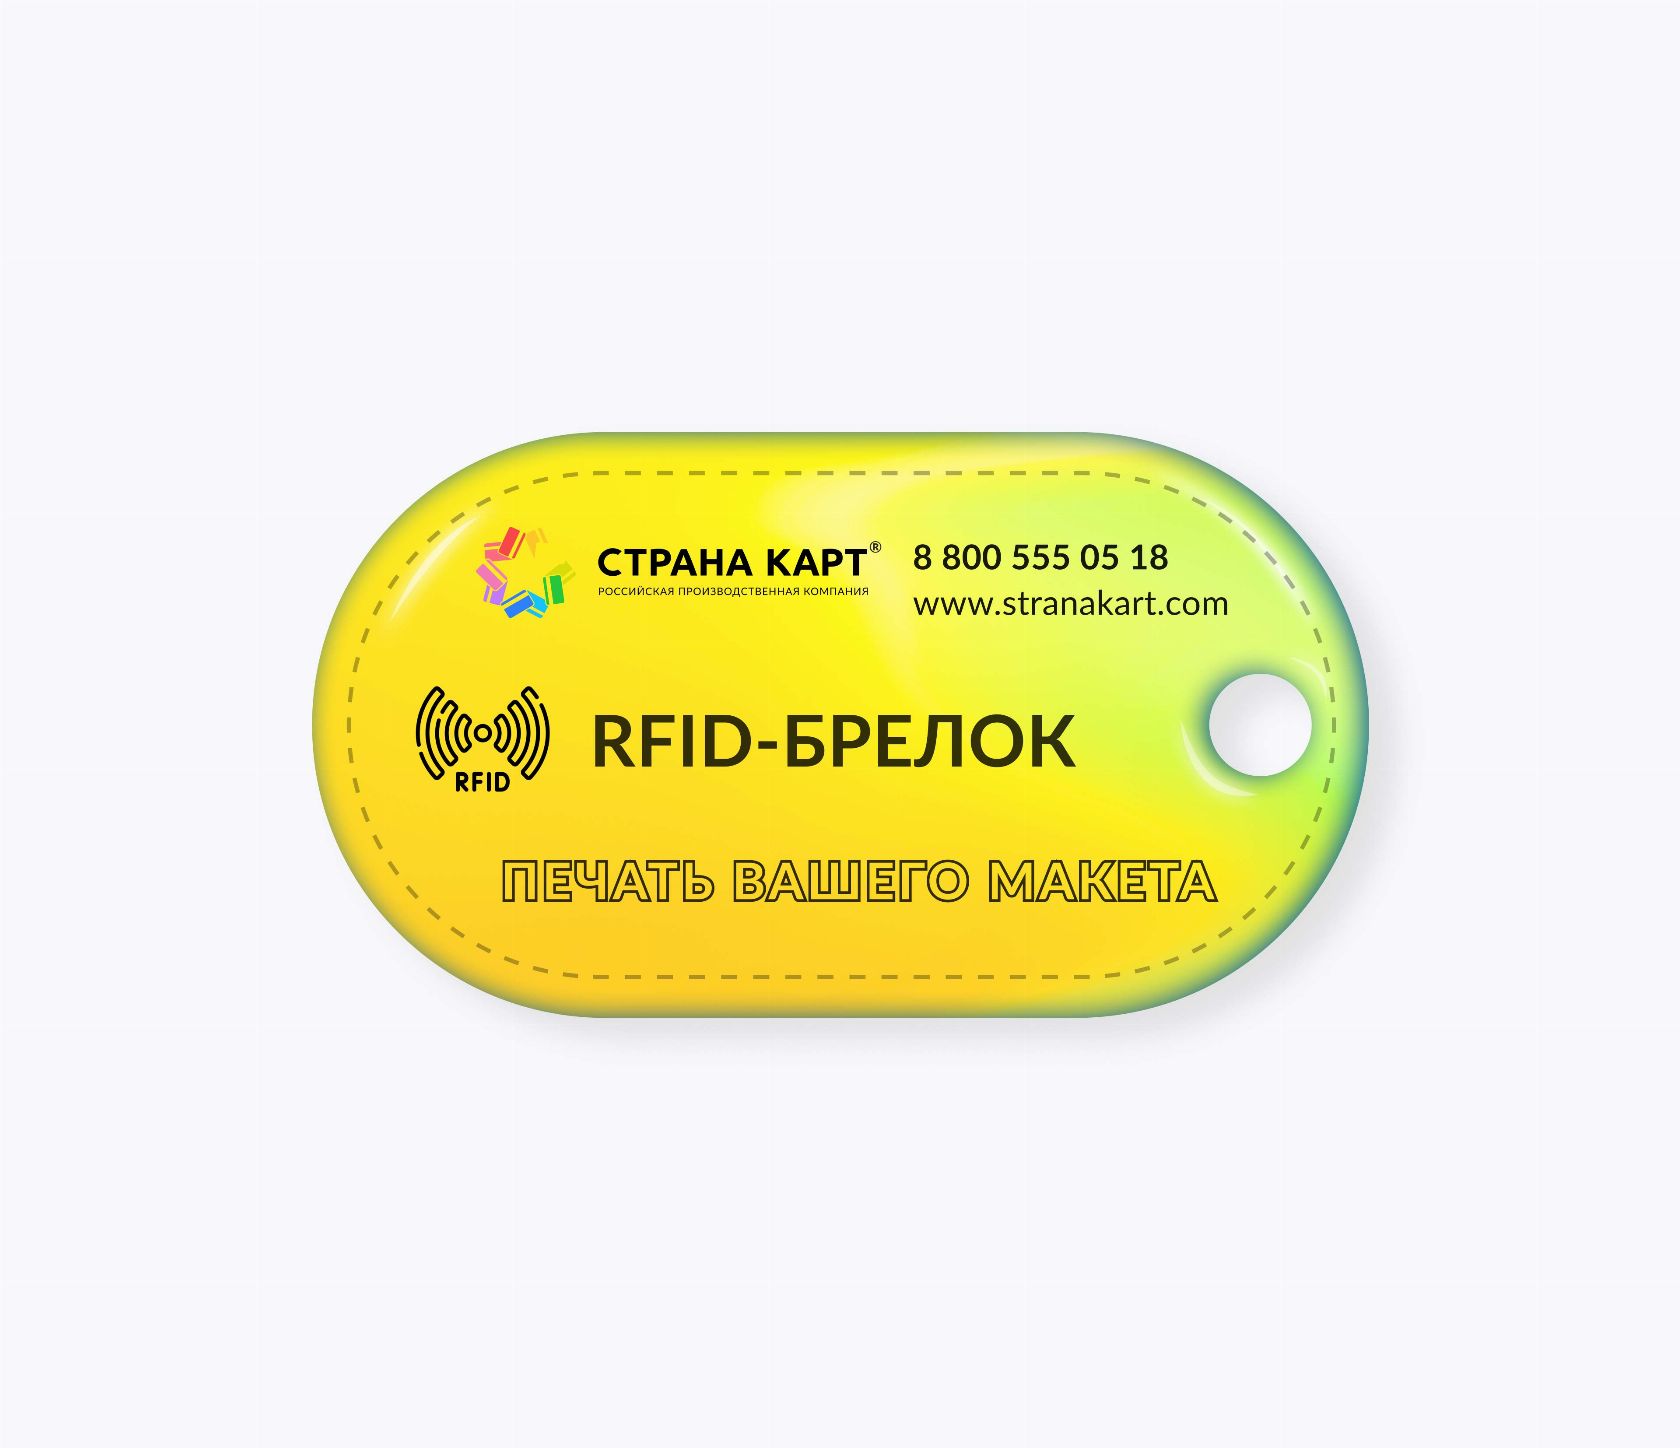 Овальные RFID-брелоки NEOKEY® с чипом EM-MARINE TK4100 RFID-брелоки NEOKEY® с чипом EM-MARINE TK4100 и вашим логотипом